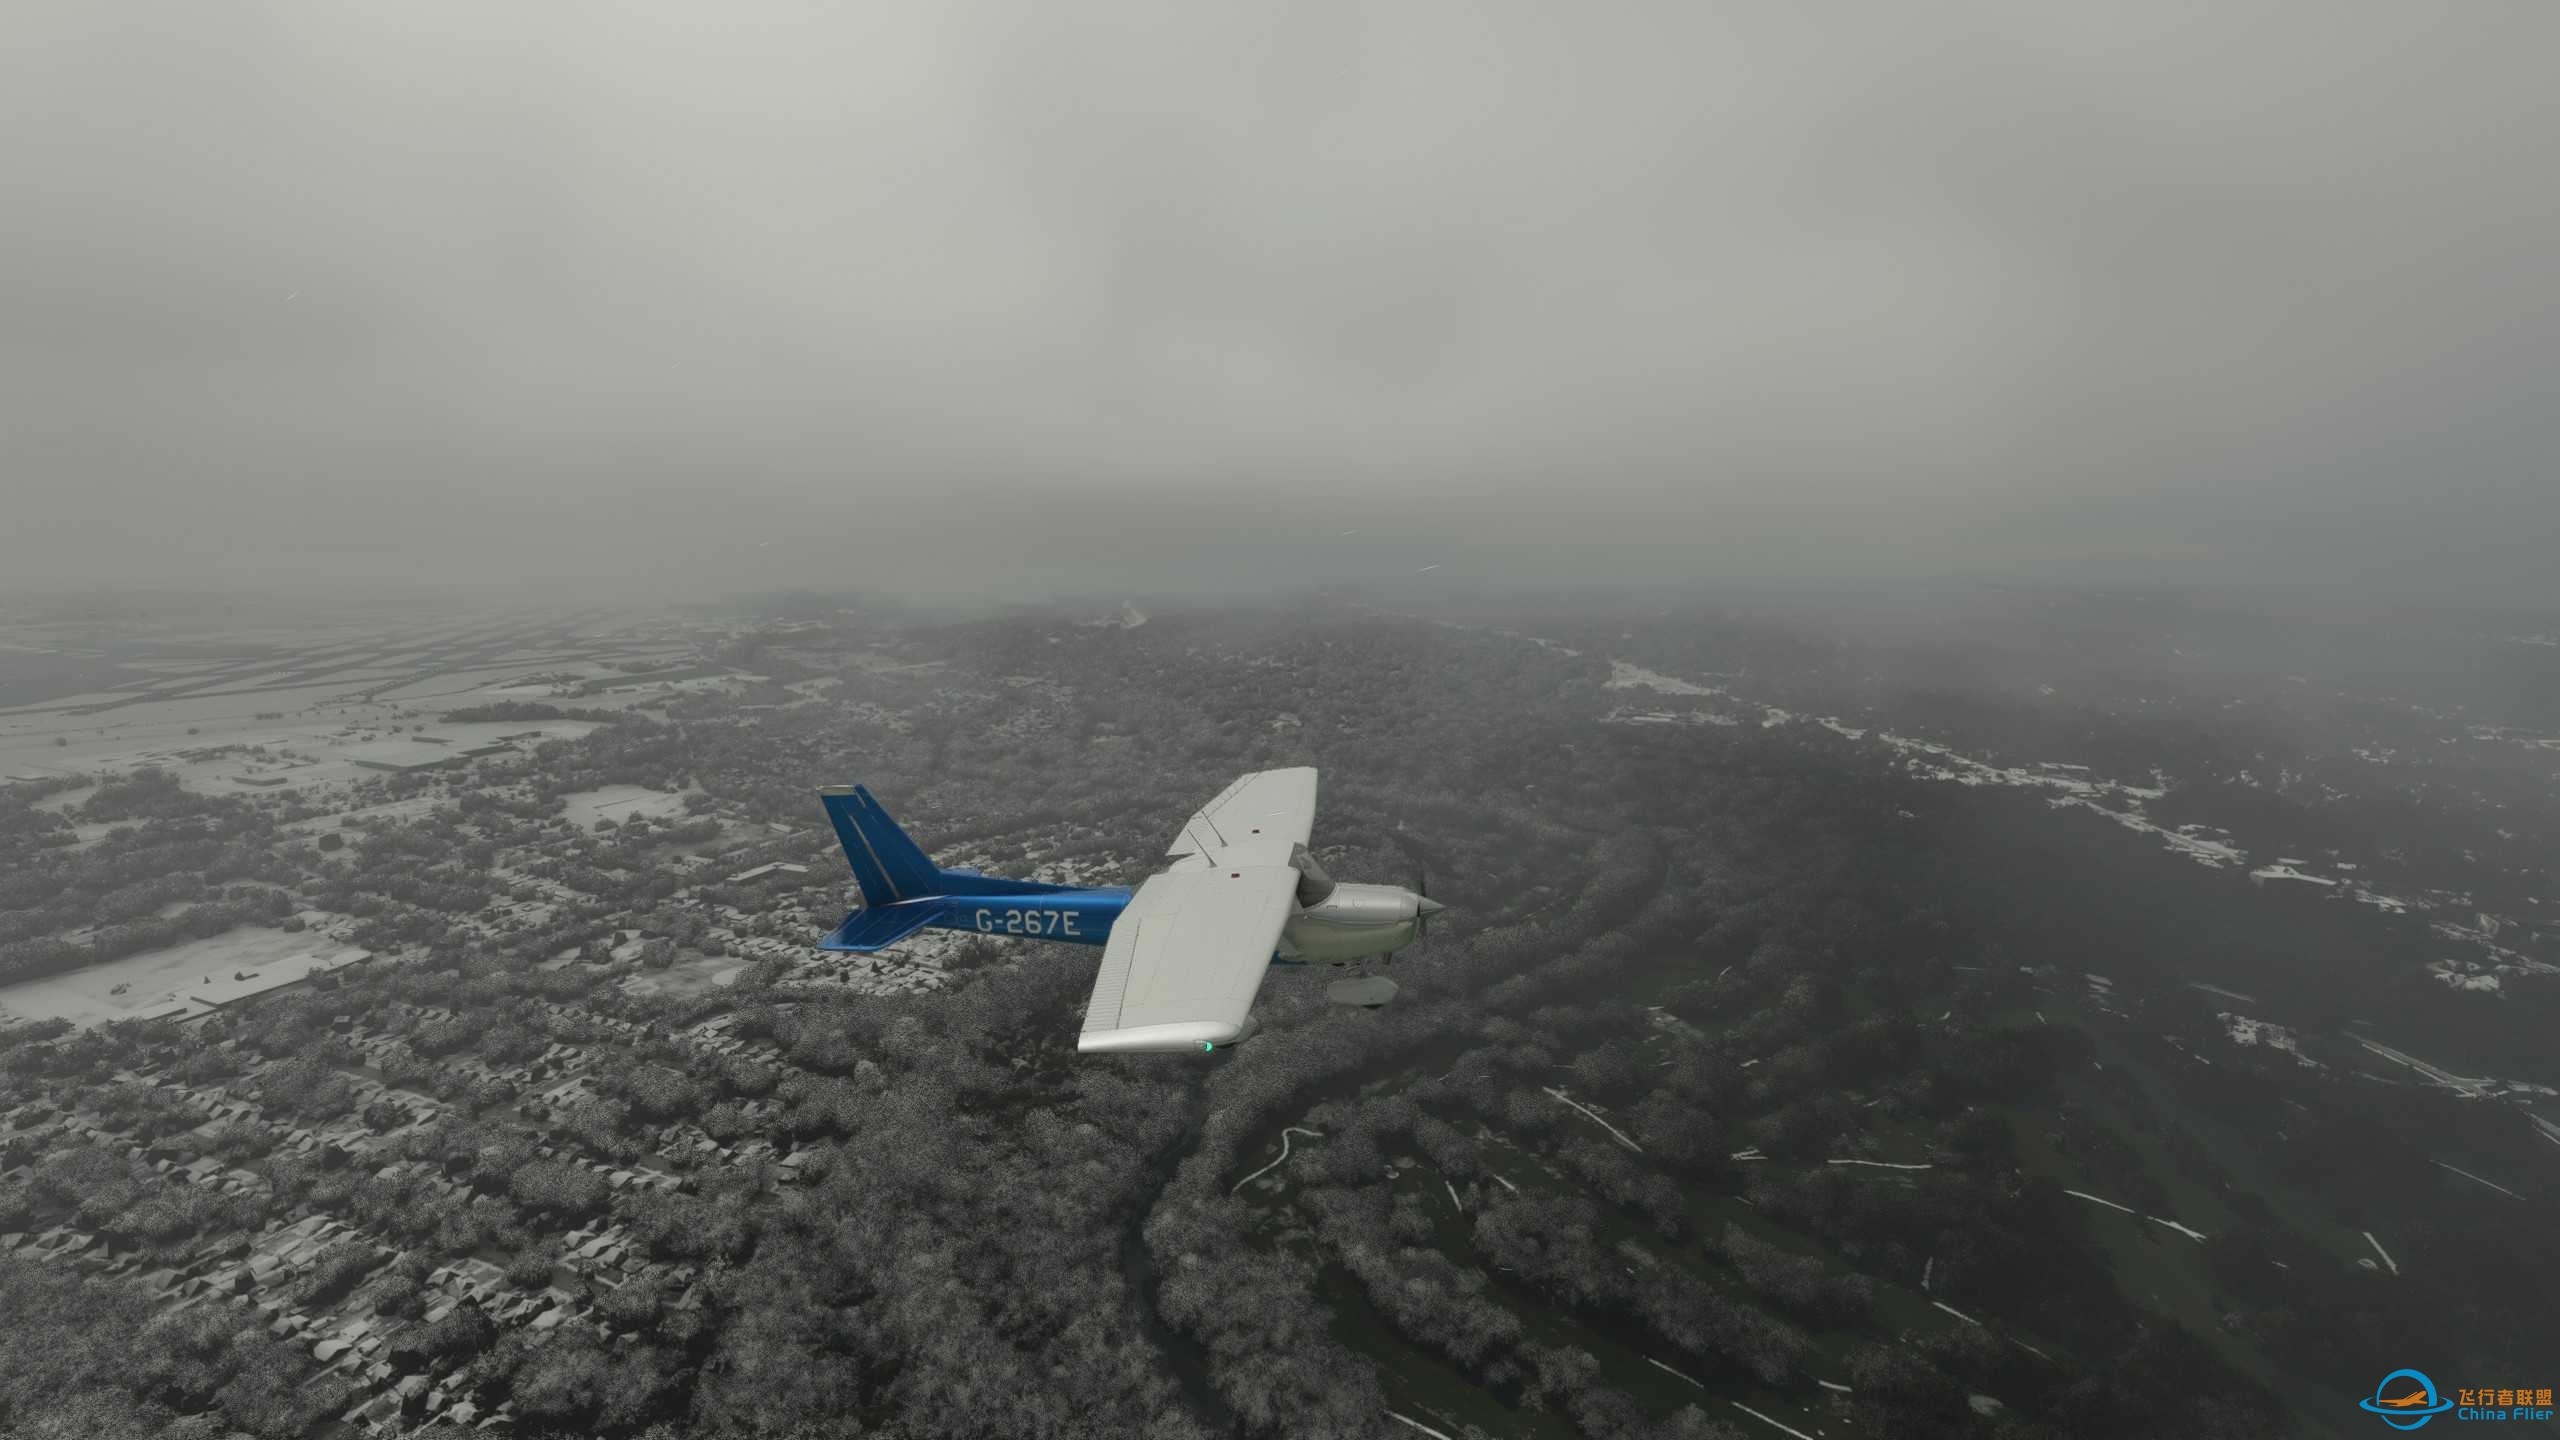 雨雪天气飞机结冰，MSFS2020场景真实度确实可以-2381 